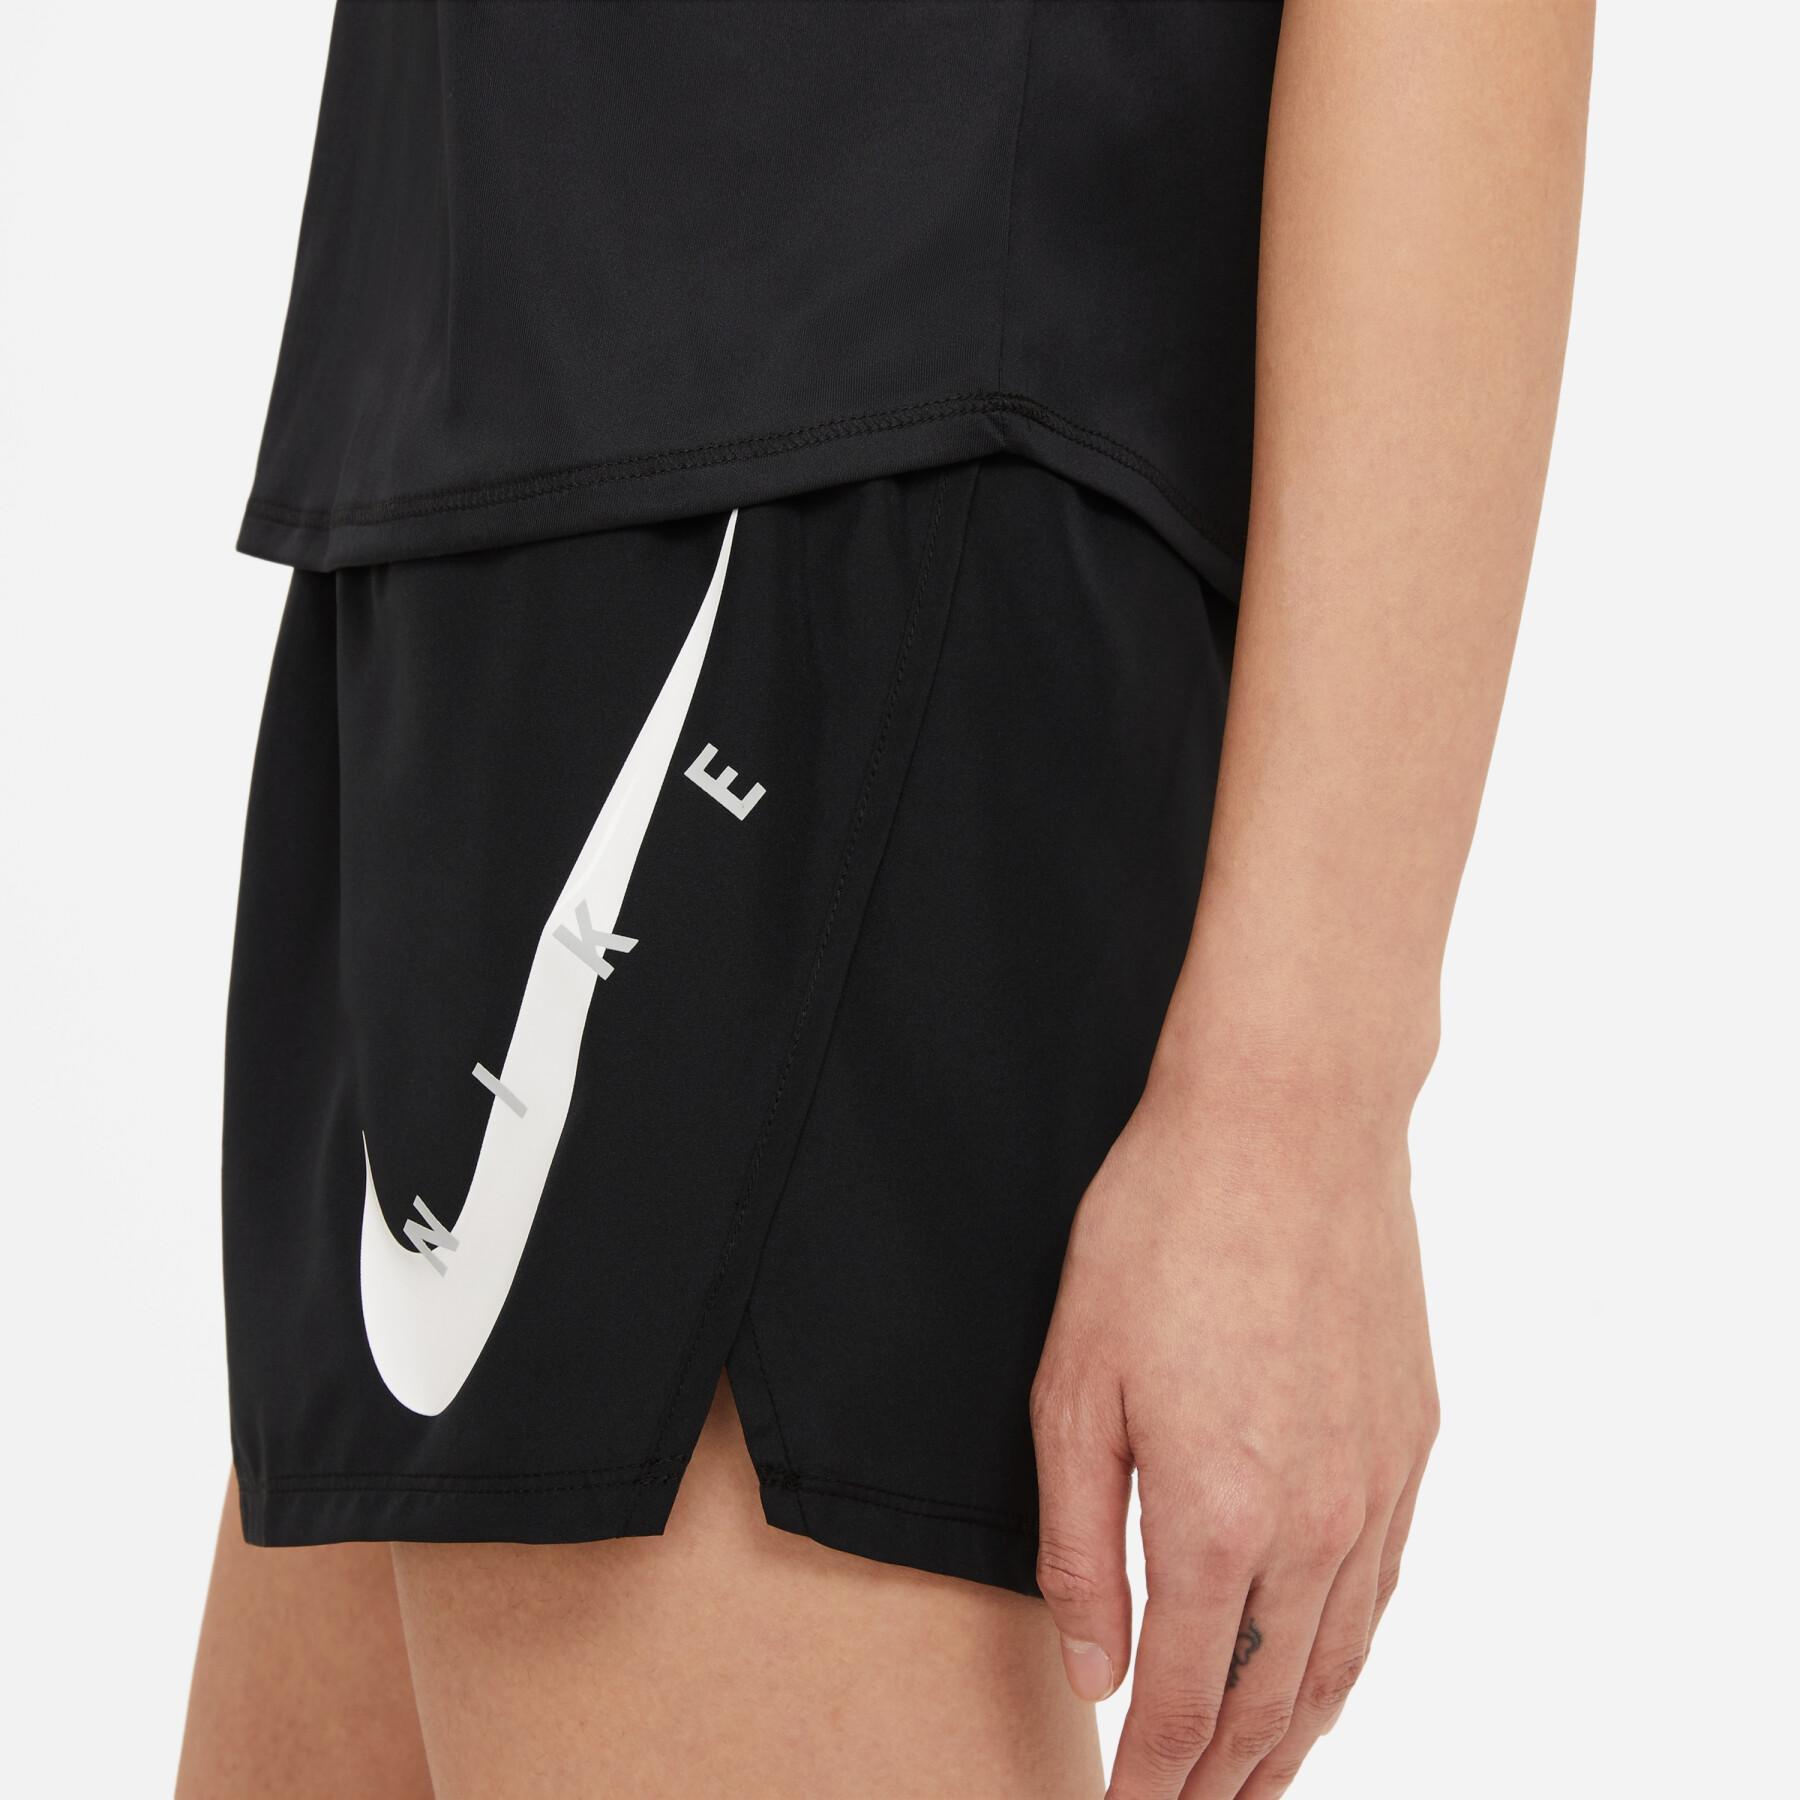 Damen-T-Shirt Nike Swoosh Run